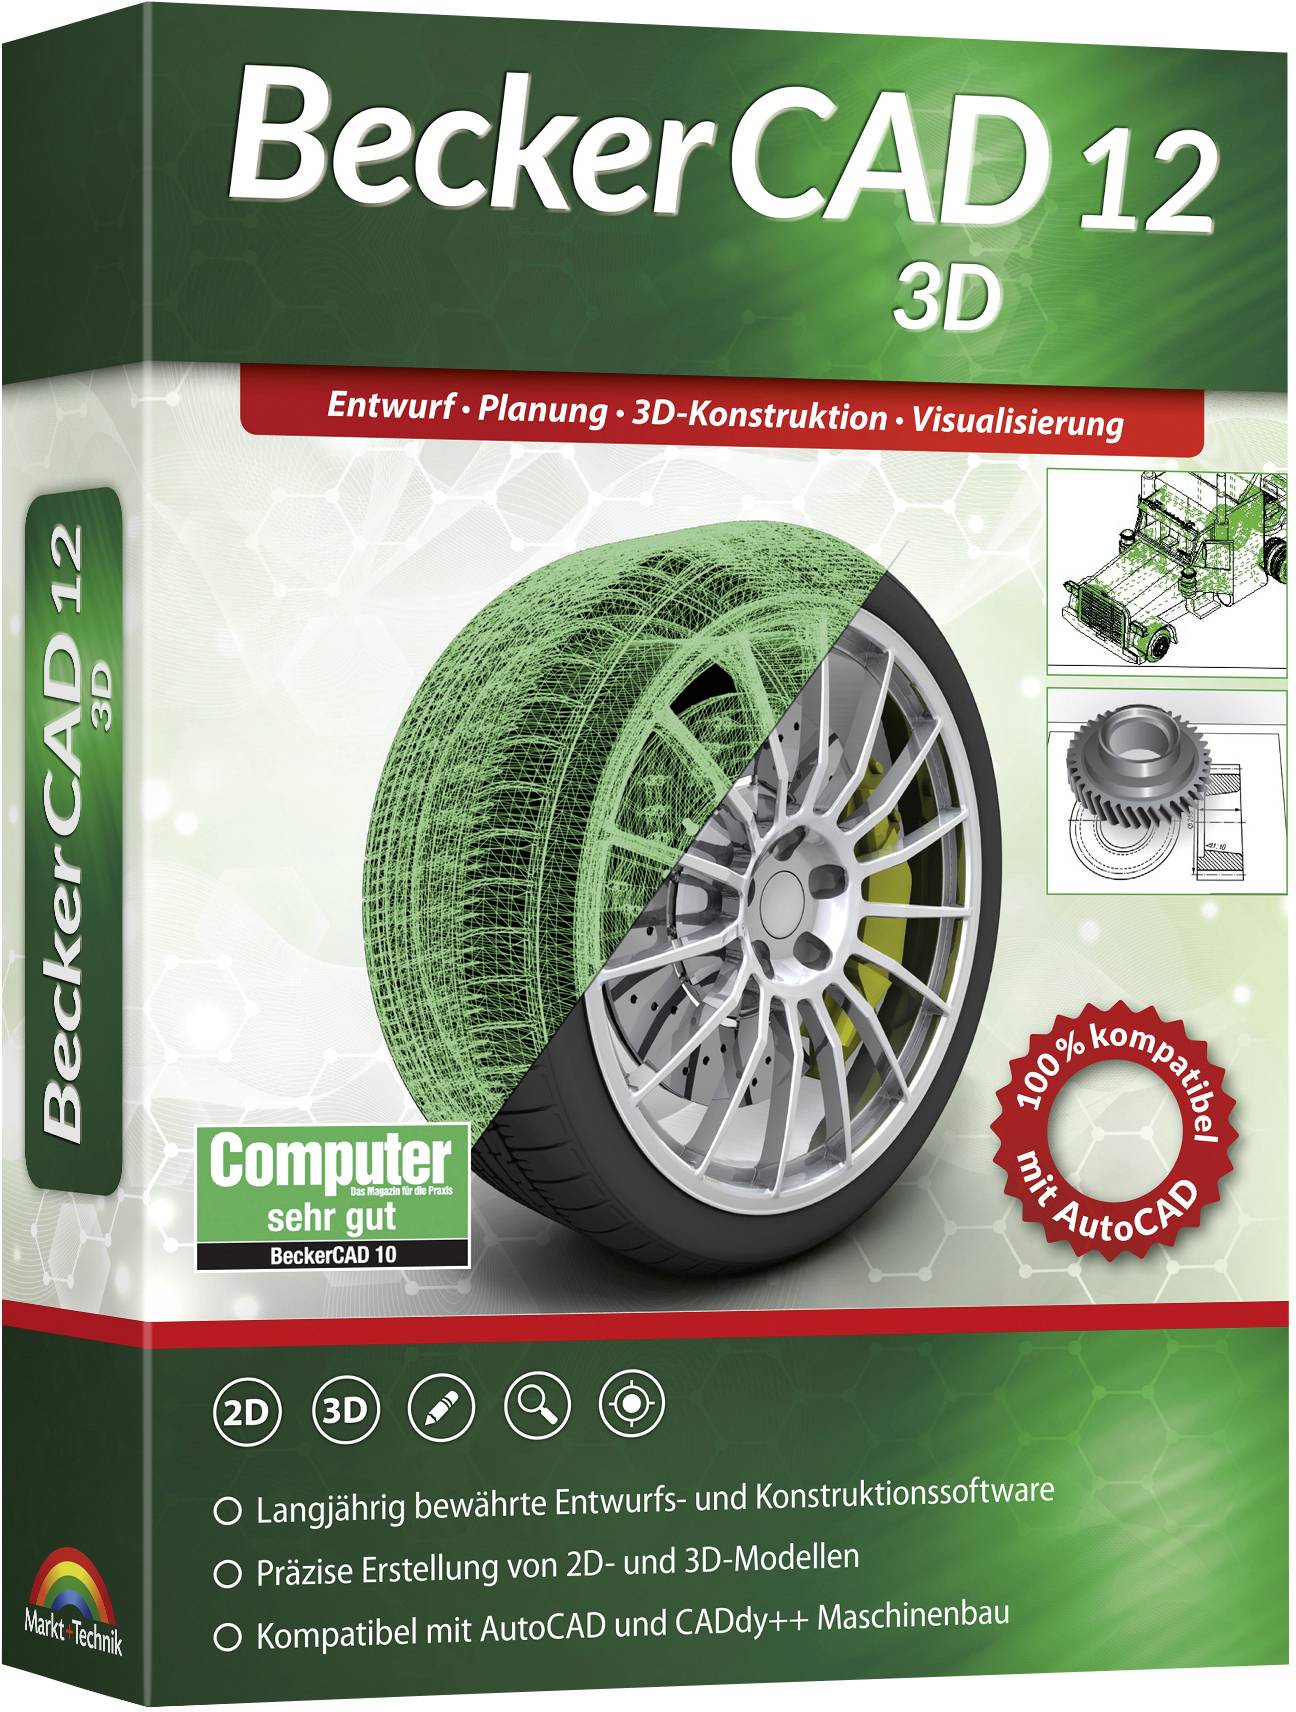 MARKT & TECHNIK BeckerCAD 12 3D Vollversion, 1 Lizenz Windows CAD-Software